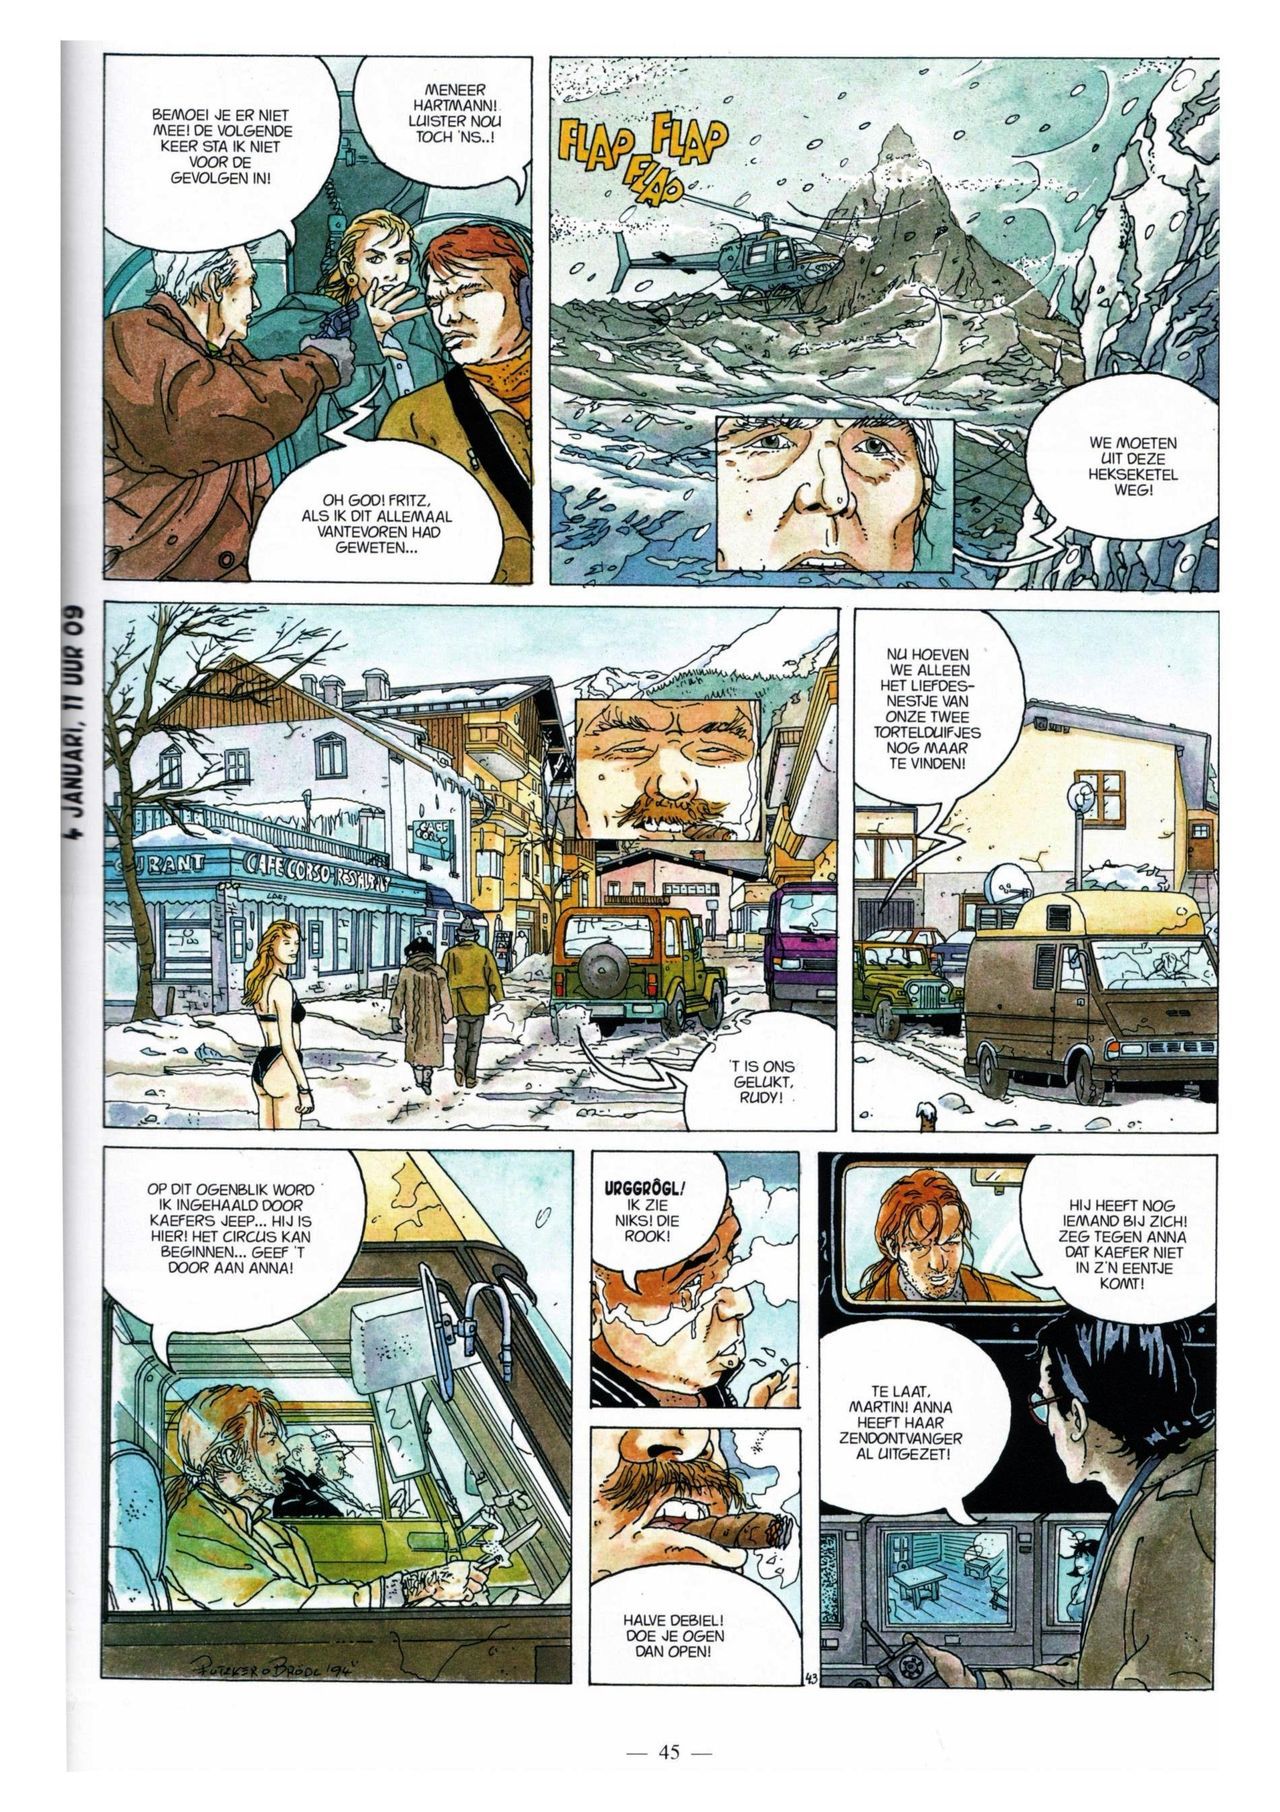 Anna Stein - 03 - De Laatste Alpengloed (Dutch) Engelstalige strips die op deze site staan, hier is de Nederlandse uitgave! 45